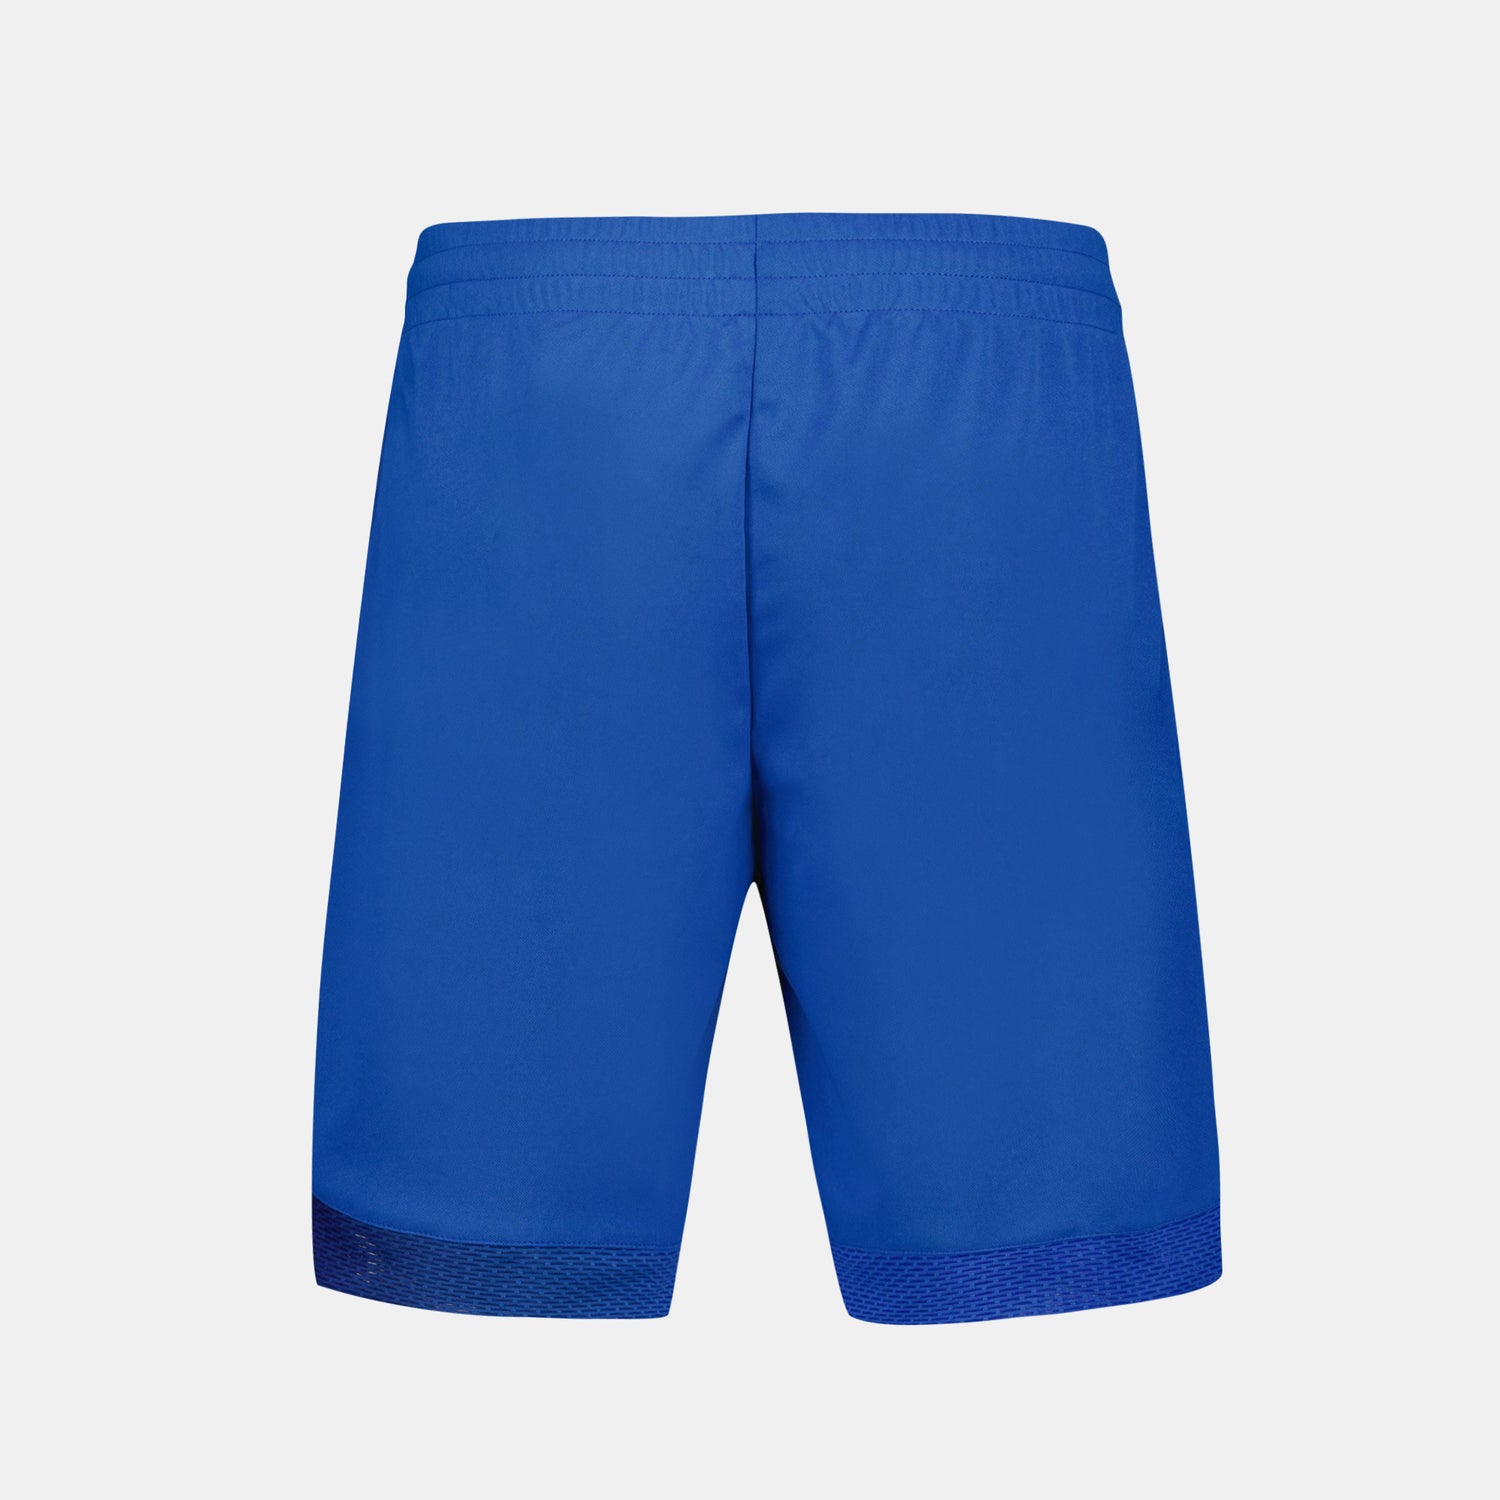 2410521-TENNIS PRO Short 24 N°1 M lapis blue  | Pantalones Cortos Hombre